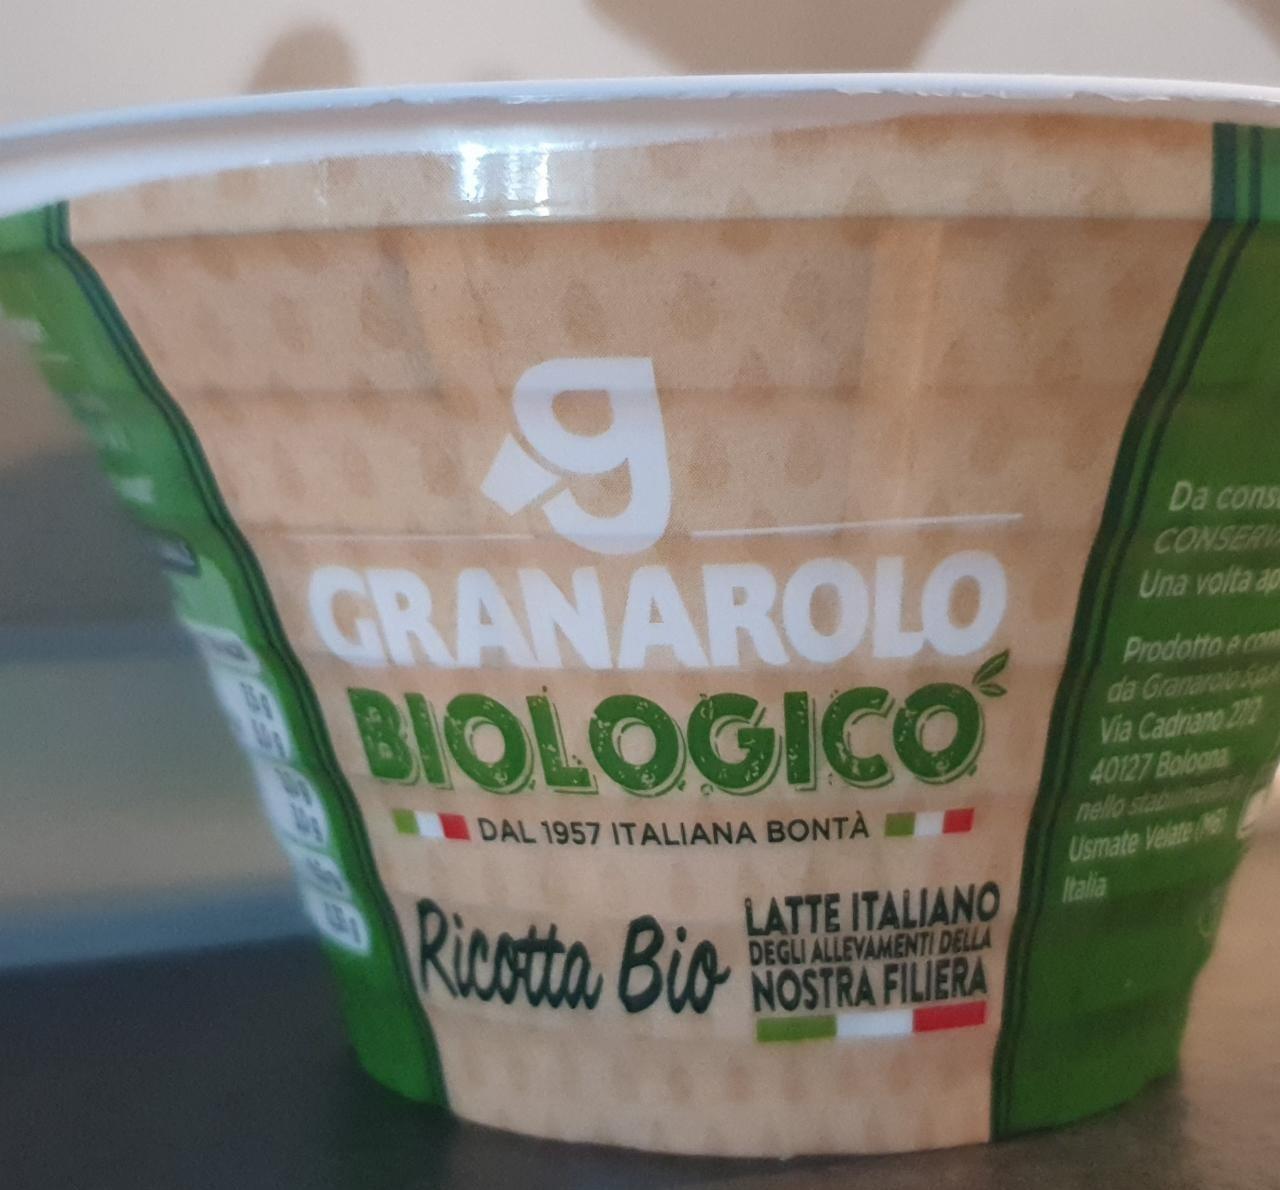 Fotografie - Ricotta Bio Biologico Granarolo